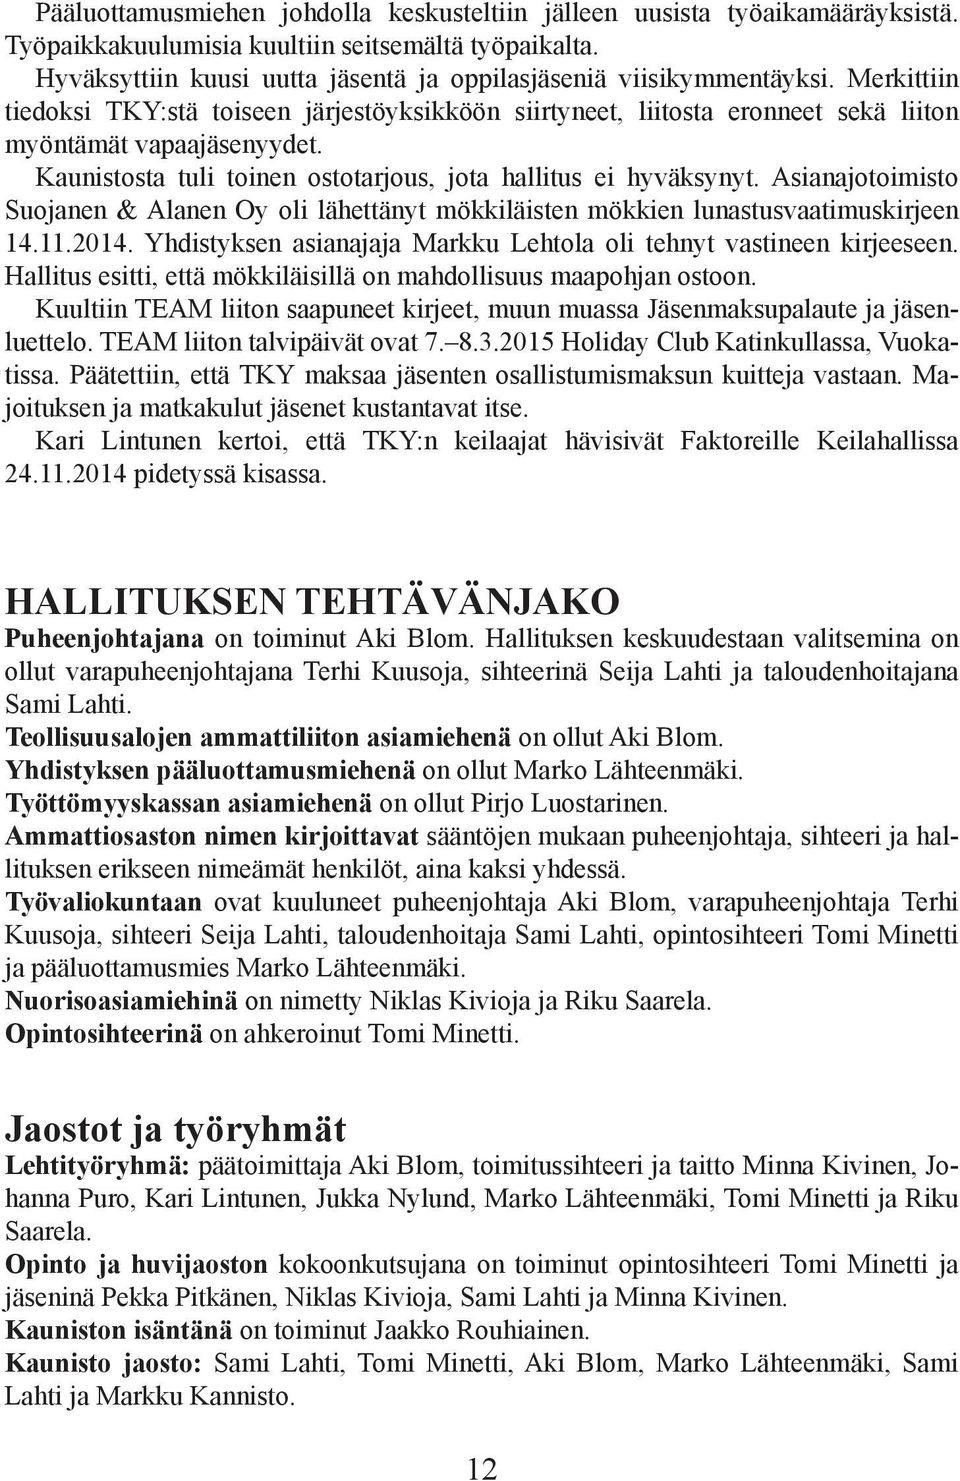 Kaunistosta tuli toinen ostotarjous, jota hallitus ei hyväksynyt. Asianajotoimisto Suojanen & Alanen Oy oli lähettänyt mökkiläisten mökkien lunastusvaatimuskirjeen 14.11.2014.